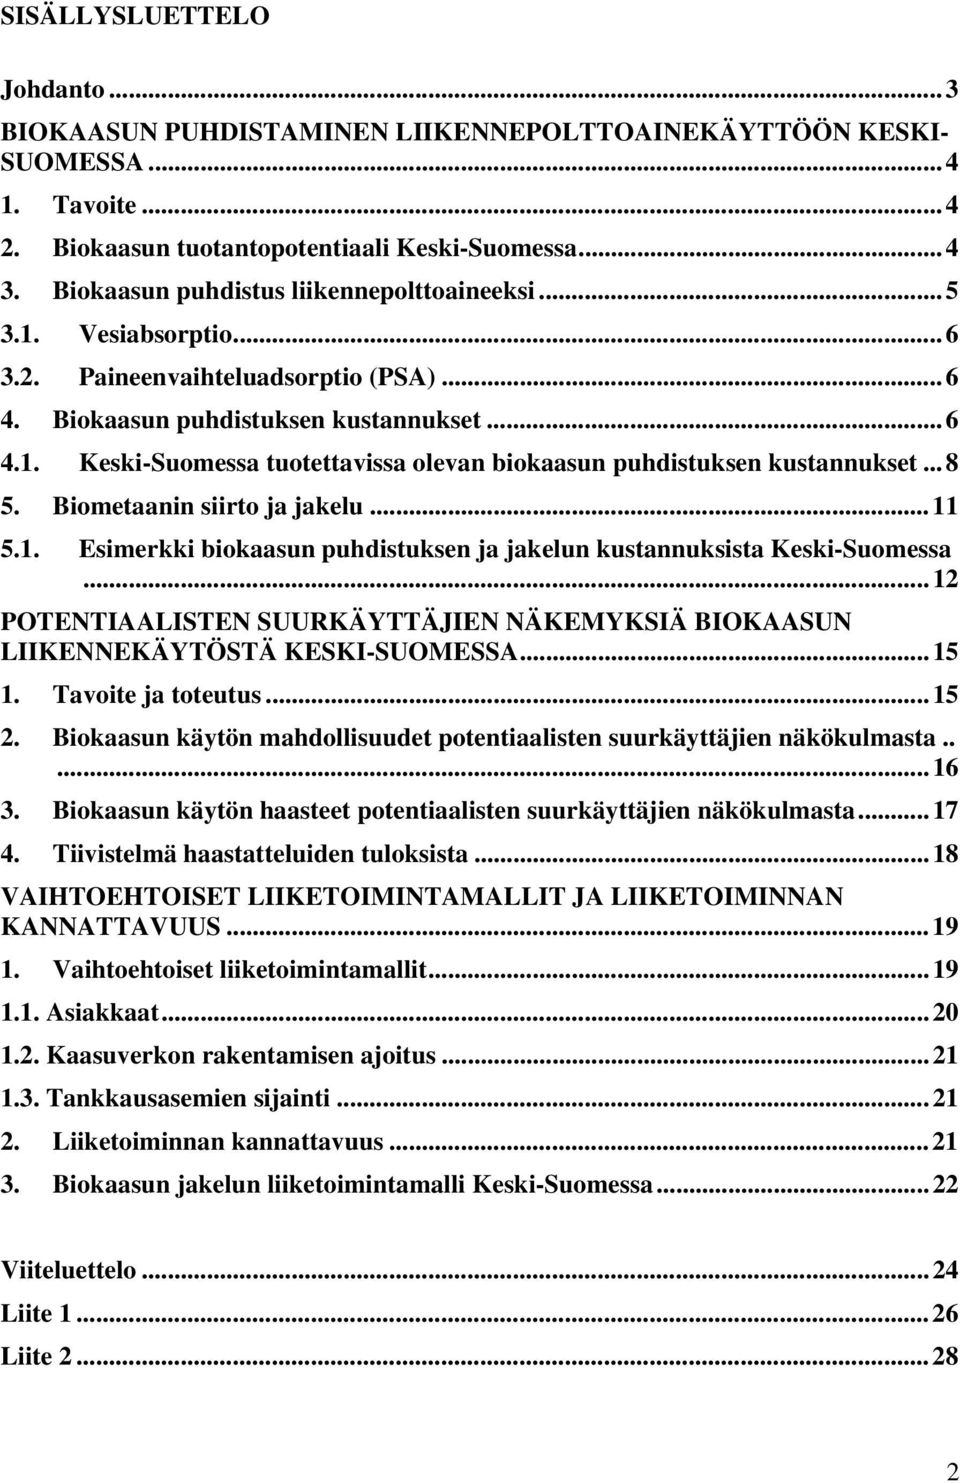 ..8 5. Biometaanin siirto ja jakelu...11 5.1. Esimerkki biokaasun puhdistuksen ja jakelun kustannuksista Keski-Suomessa.